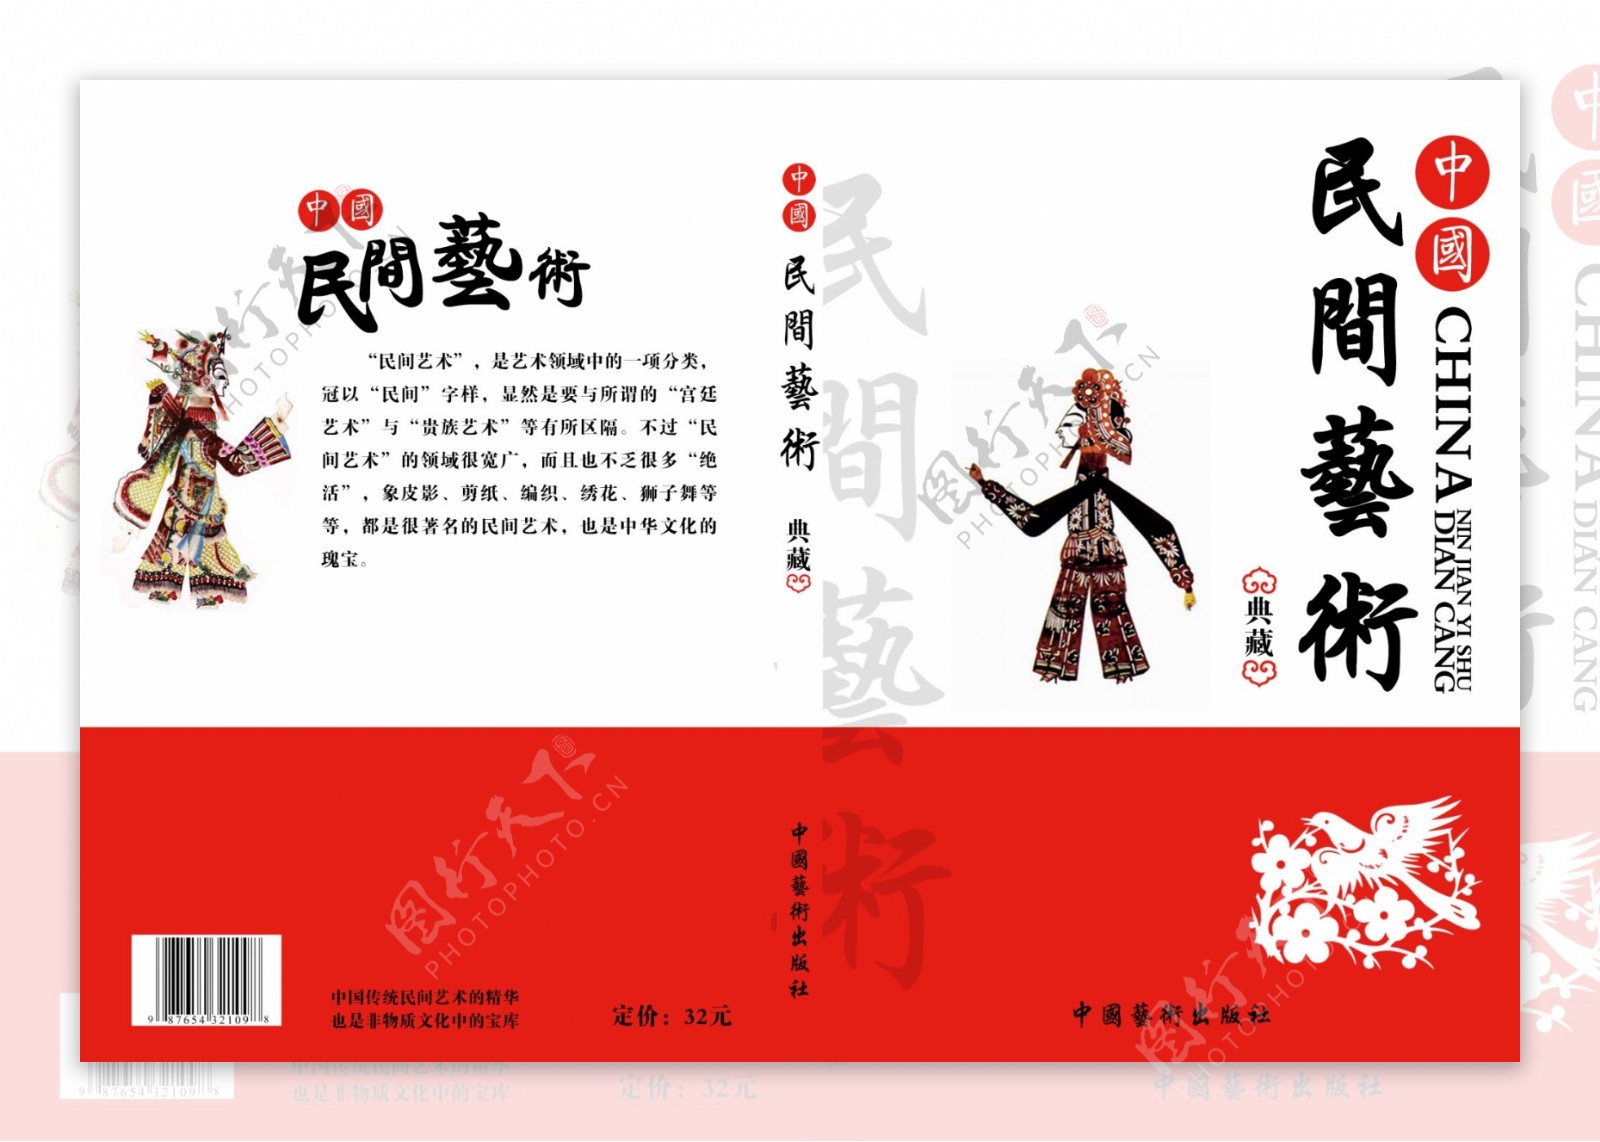 封面设计模板下载封面设计图片下载民间艺术皮影传统文化封面设计